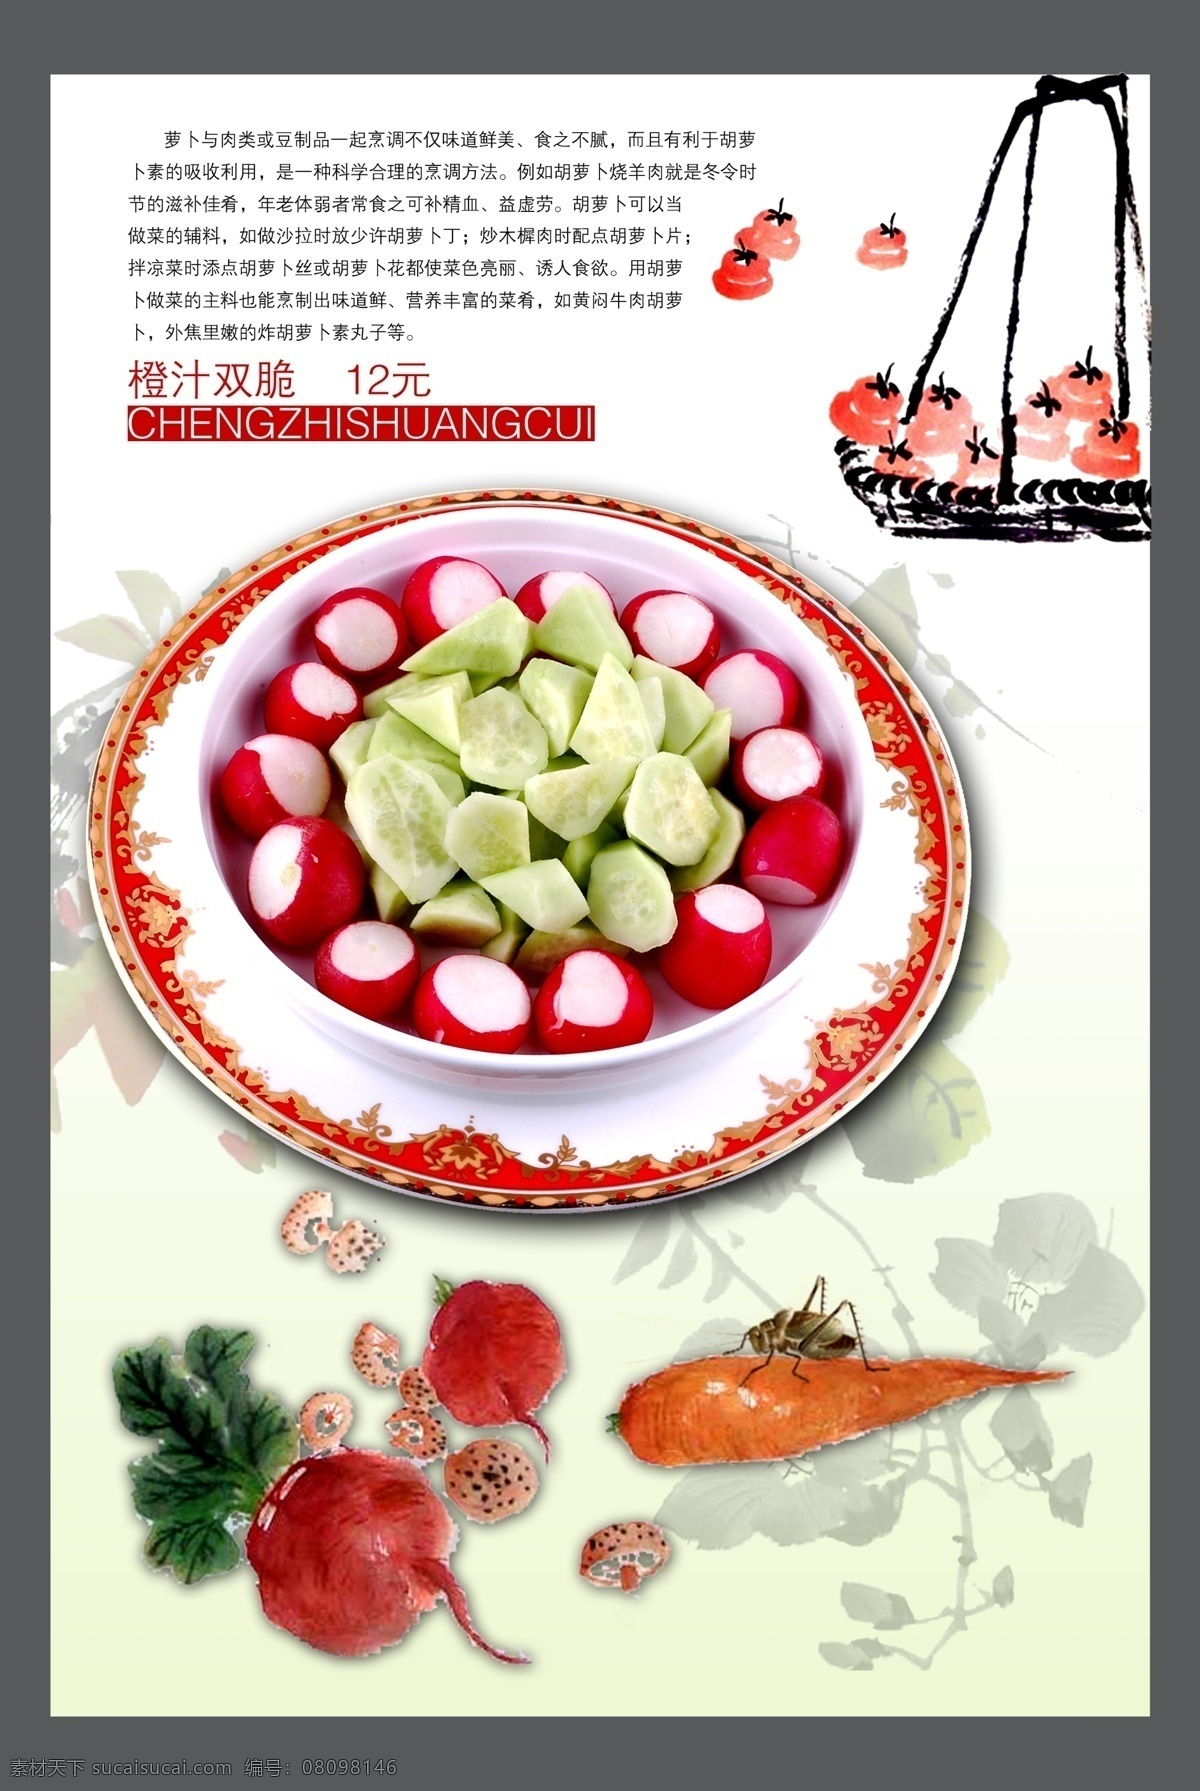 餐饮美食 广告 模板 菜品 果蔬 美食 水彩画 psd源文件 餐饮素材